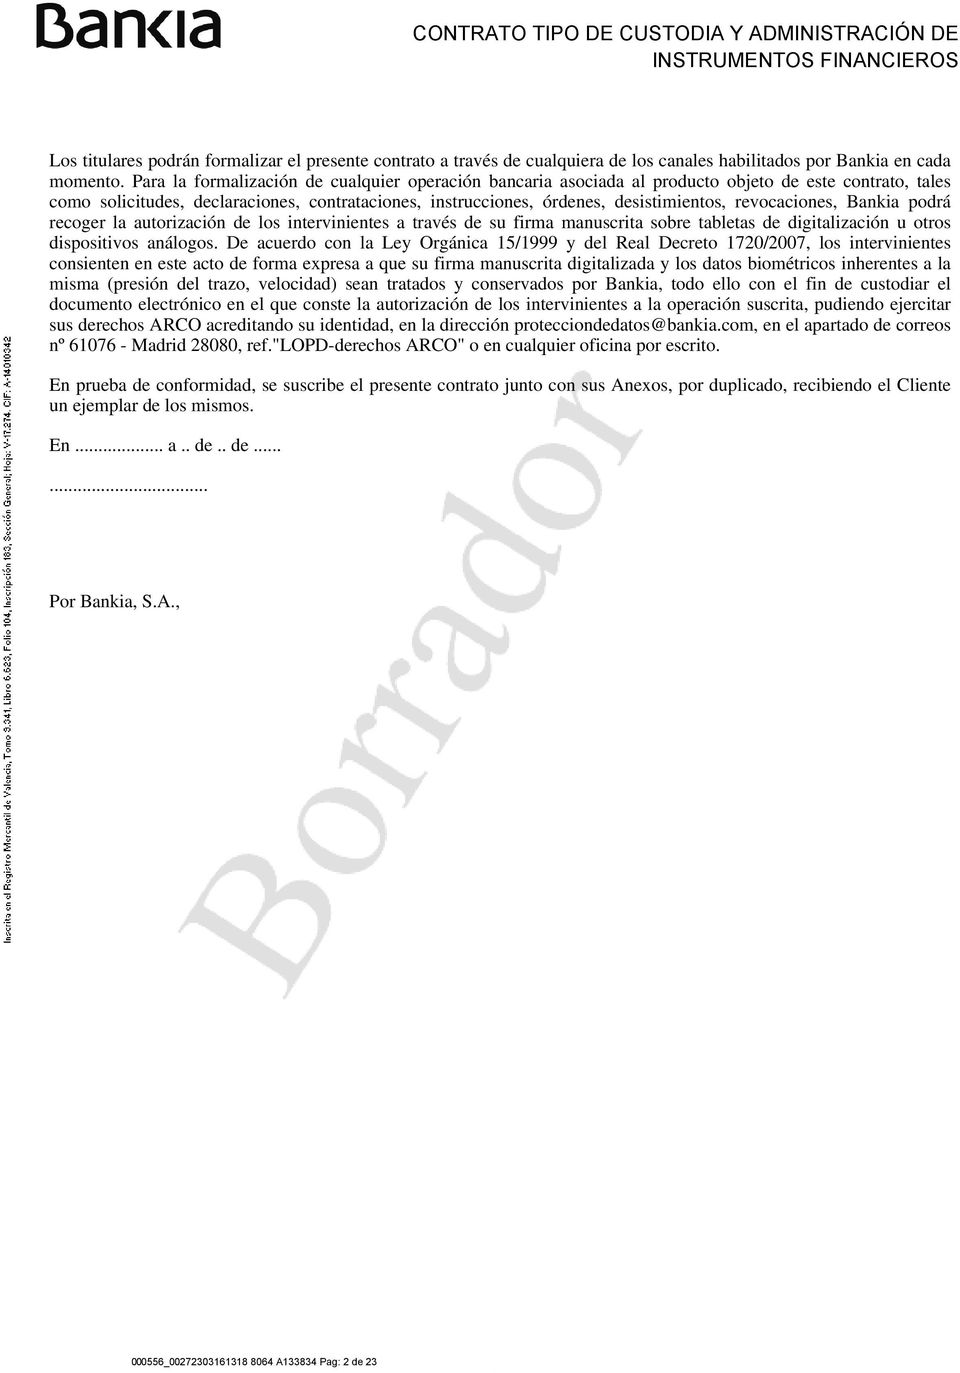 Bankia podrá recoger la autorización de los intervinientes a través de su firma manuscrita sobre tabletas de digitalización u otros dispositivos análogos.